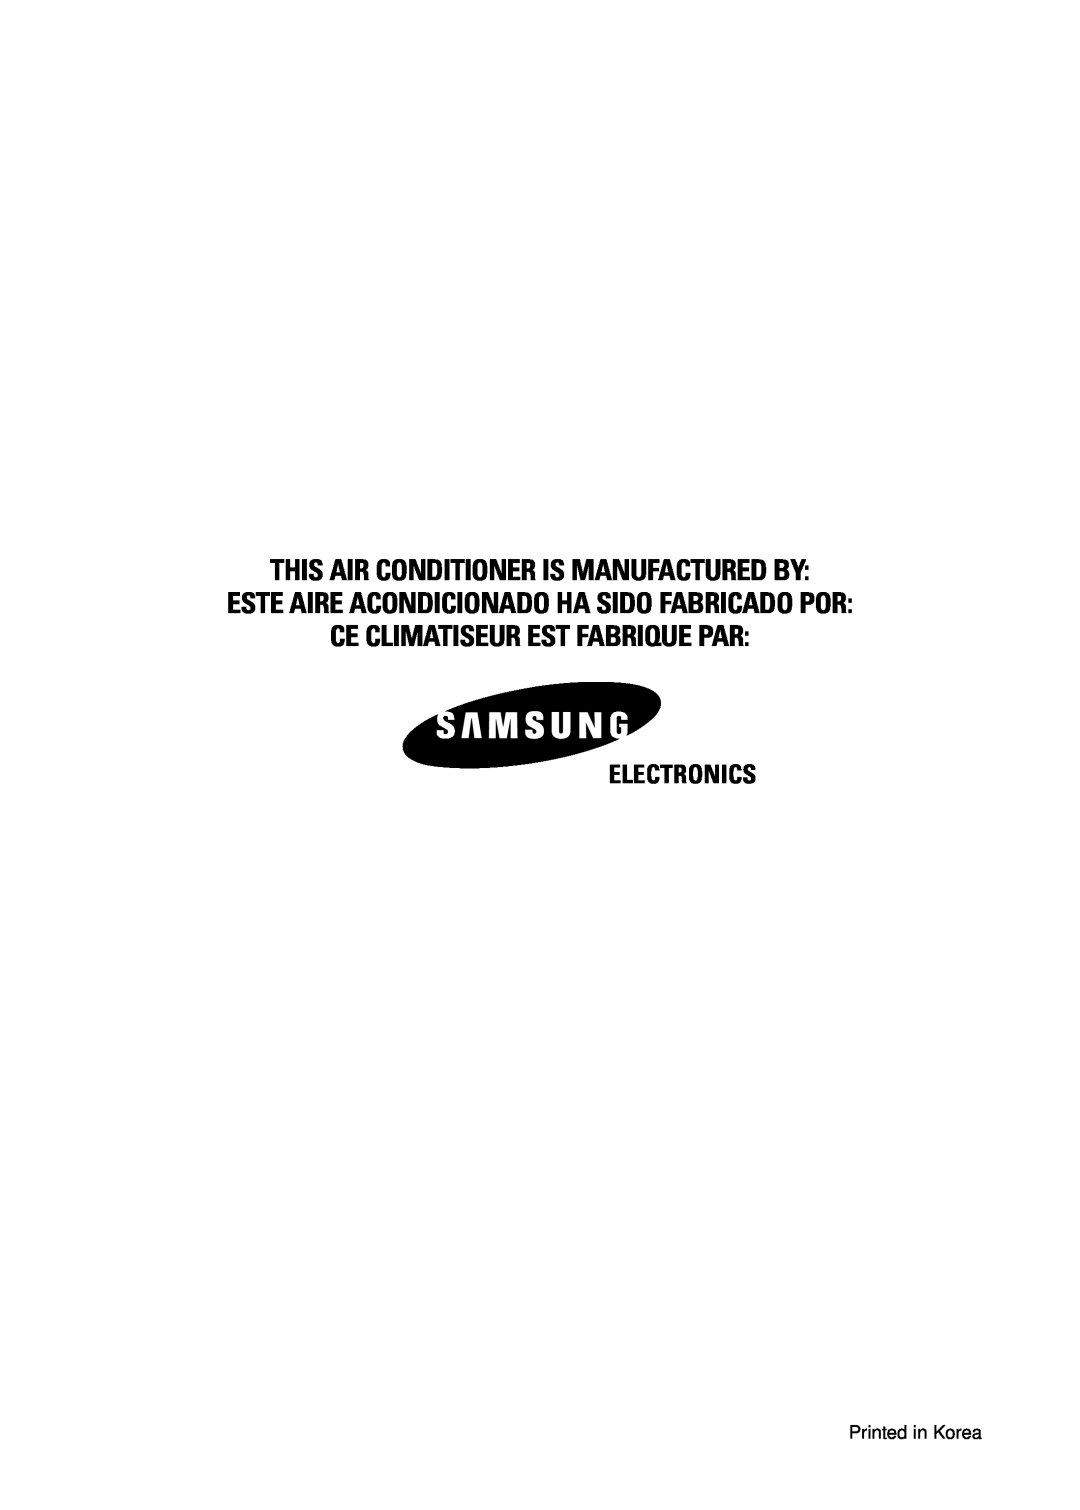 Samsung UM27B1C3 This Air Conditioner Is Manufactured By, Este Aire Acondicionado Ha Sido Fabricado Por, Electronics 